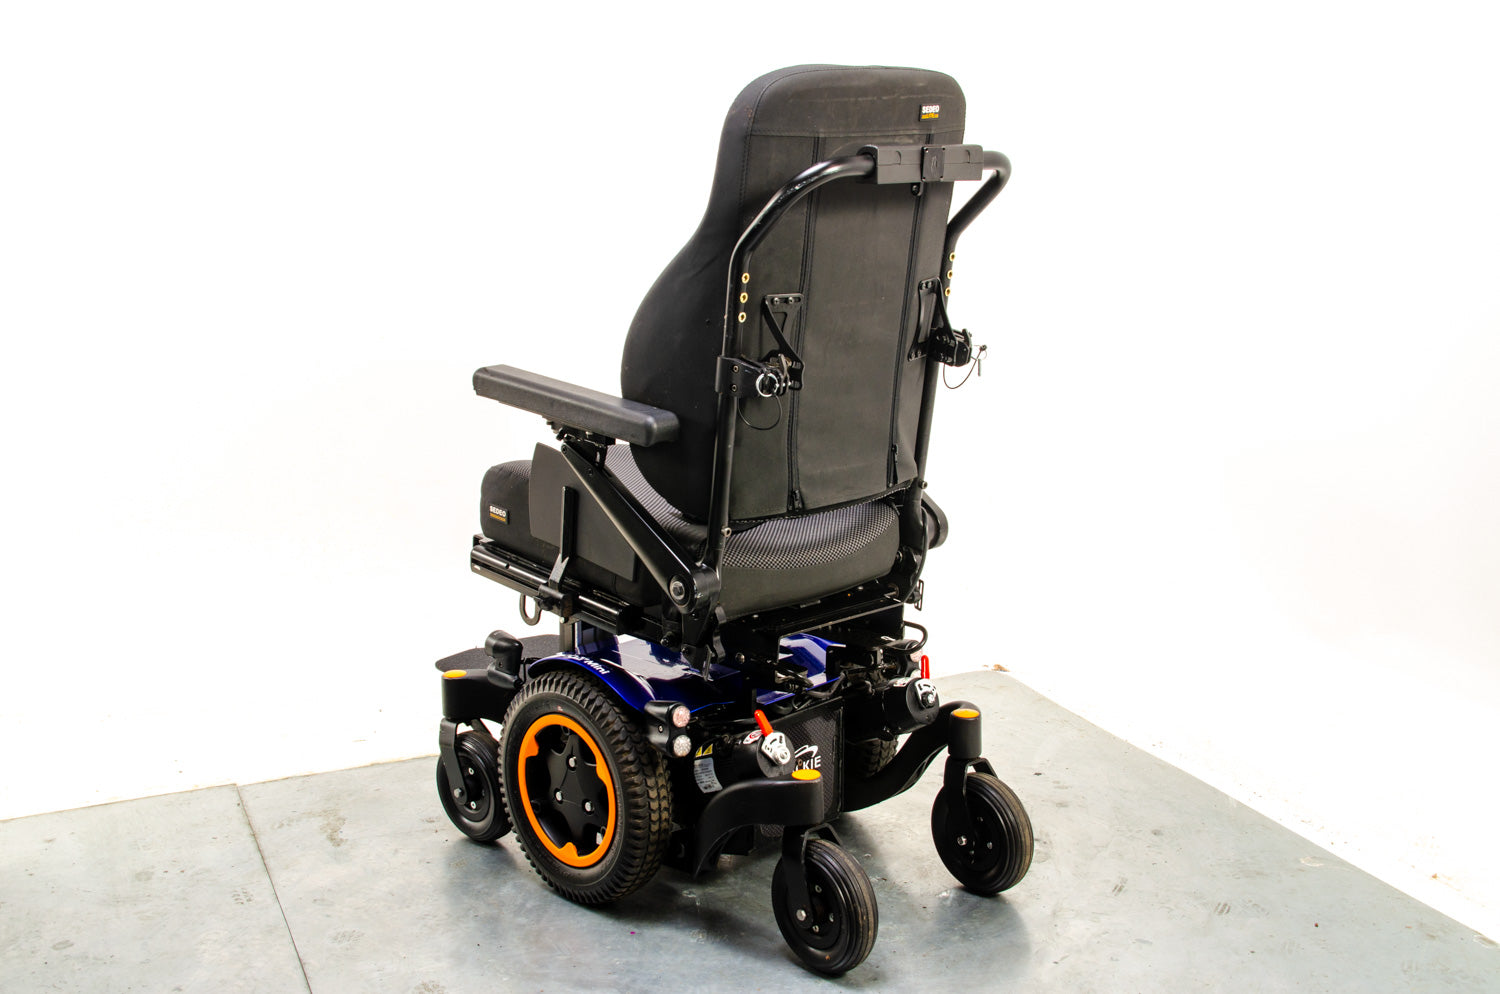 Quickie Q300 M Mini Powerchair Wheelchair Sedeo Narrow Compact Agile MWD Sunrise Medical